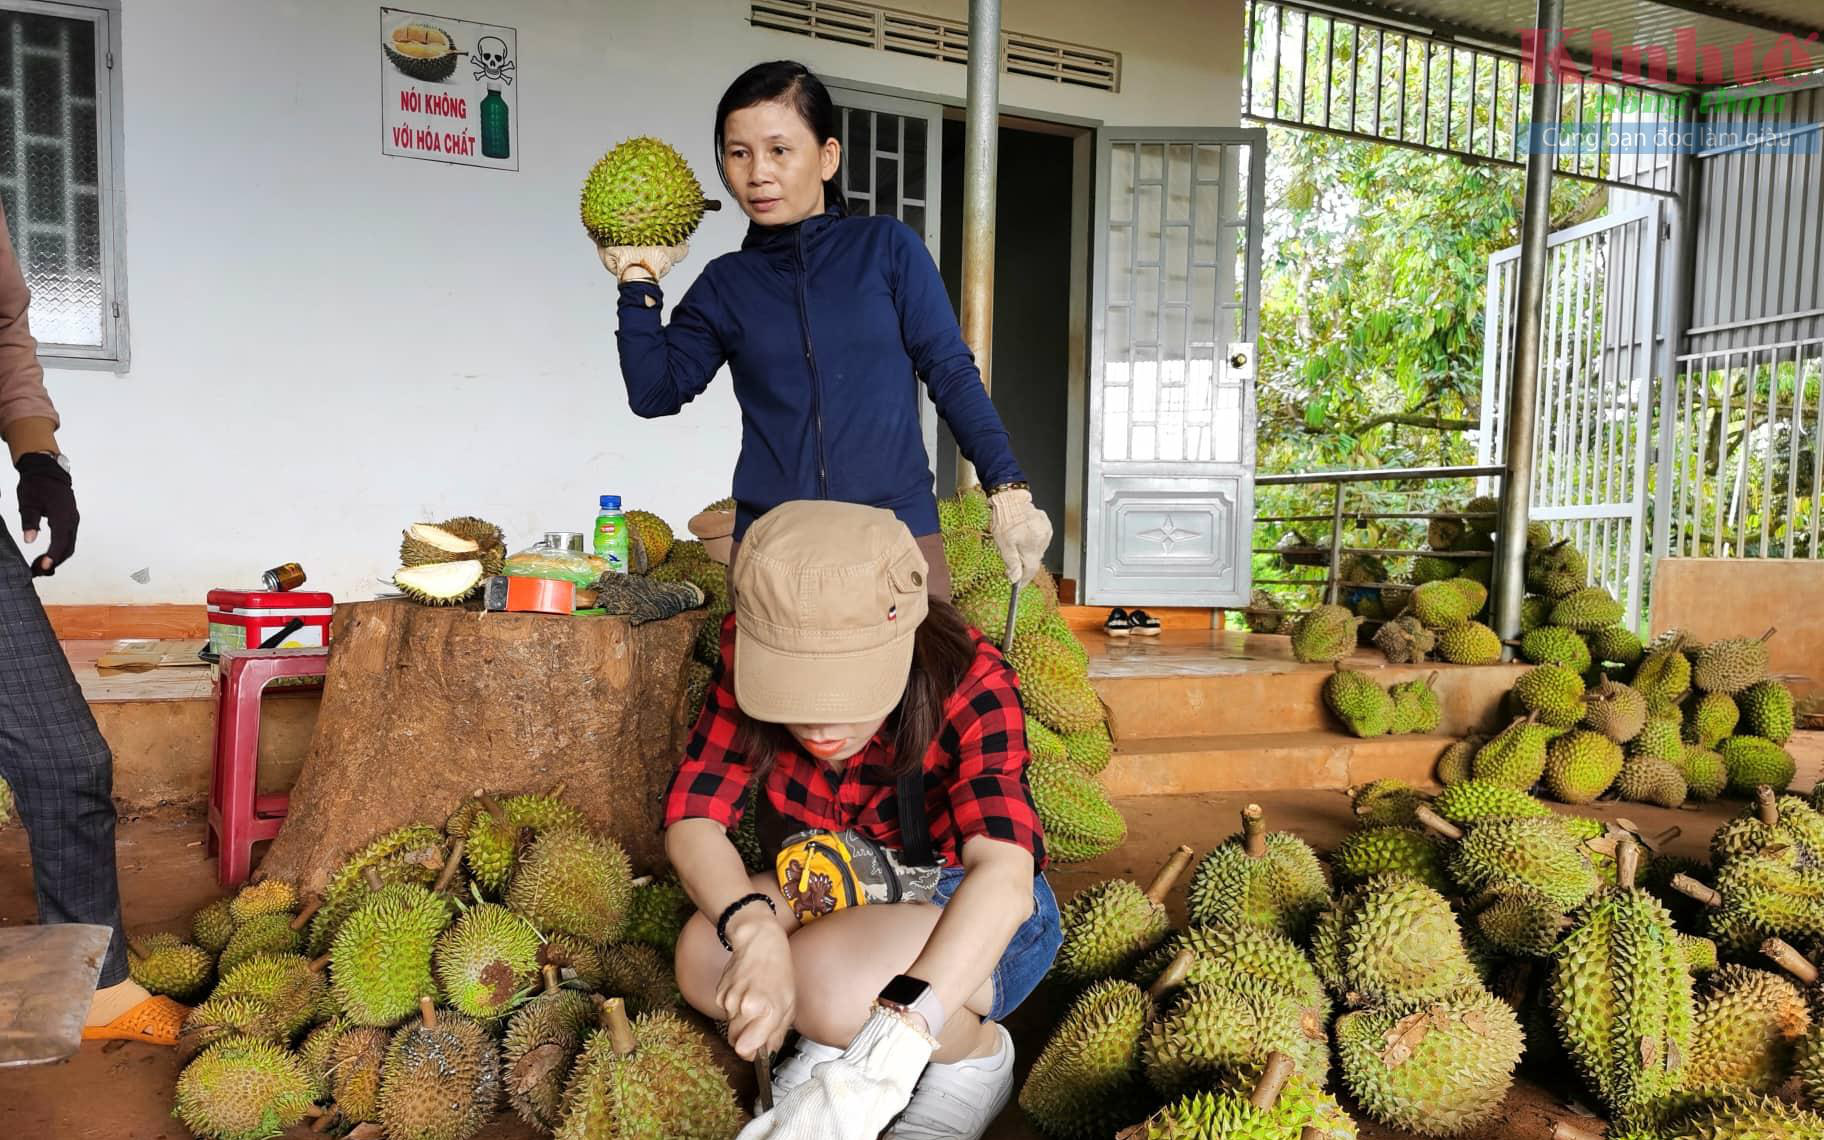 Trung Quốc chi 4,5 tỷ USD để mua loại trái cây này, là thứ quả Việt Nam đang tìm đường bán chính ngạch